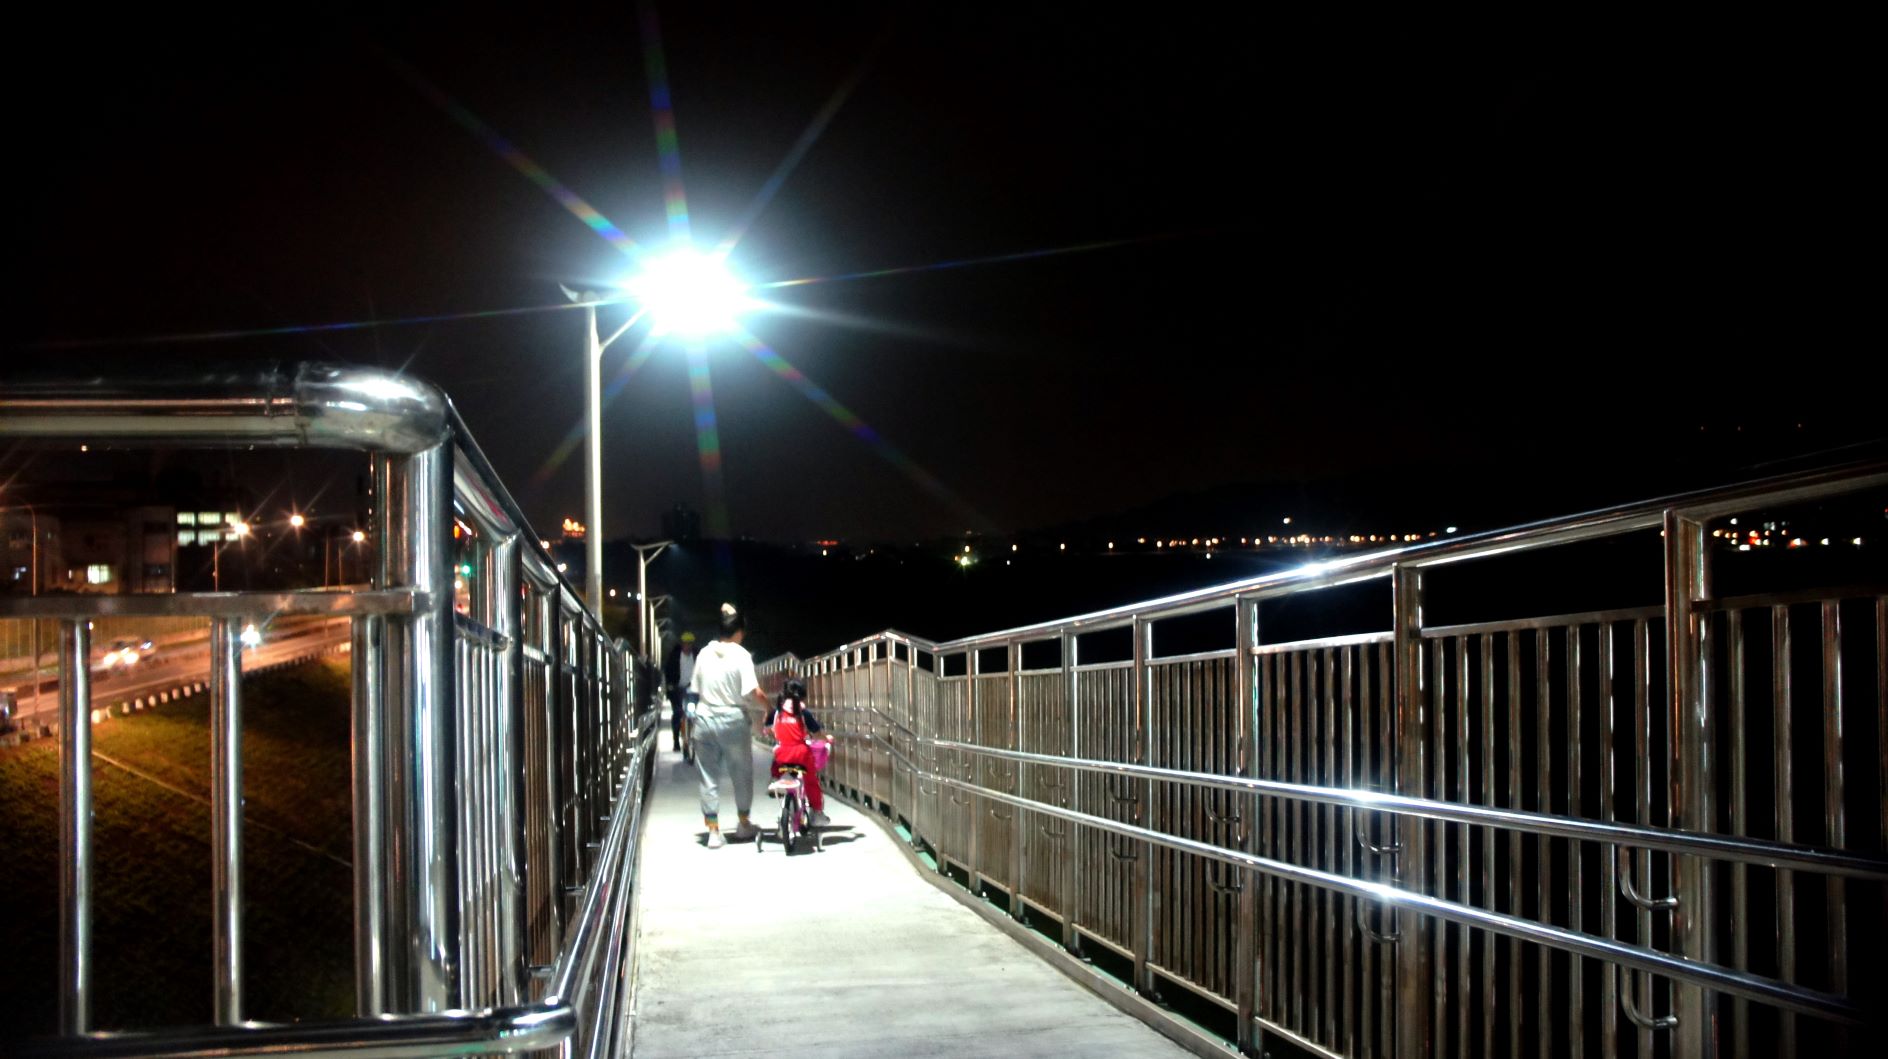 擺接堡陸橋無障礙坡道夜間照明，讓民眾夜間活動也安全